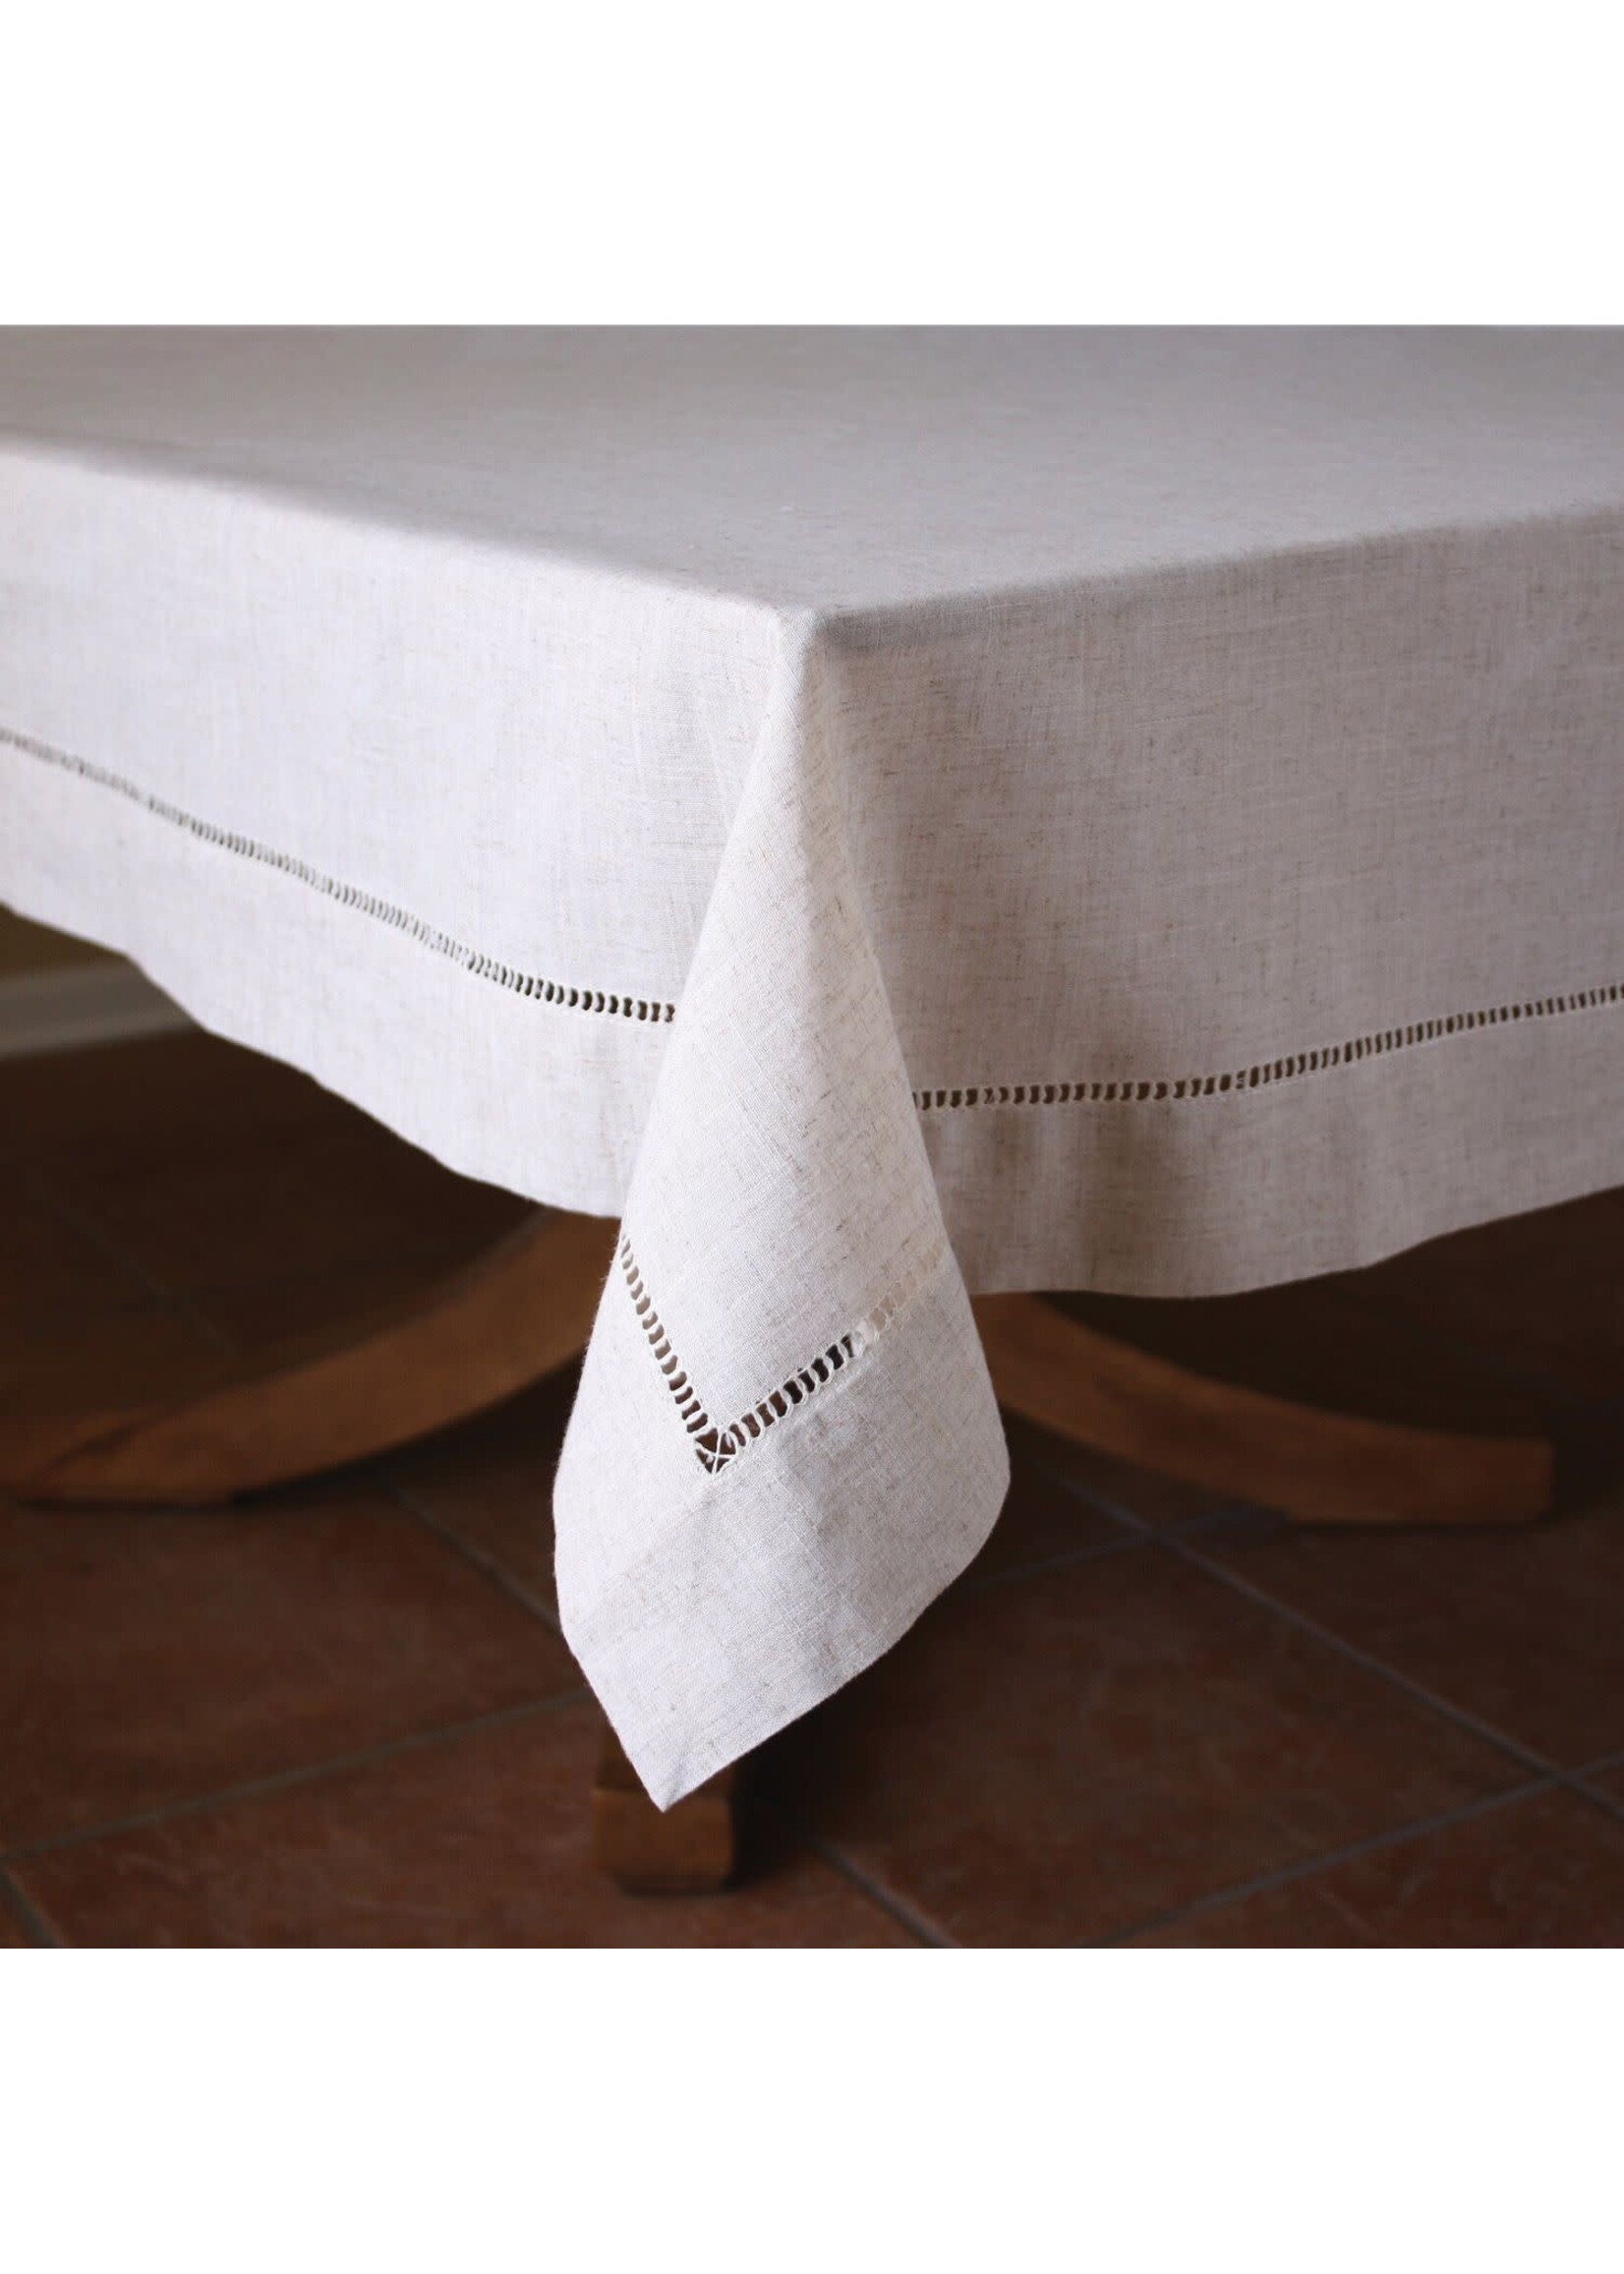 Beatriz Ball Linen Classics Tablecloth, Beige, 70x120